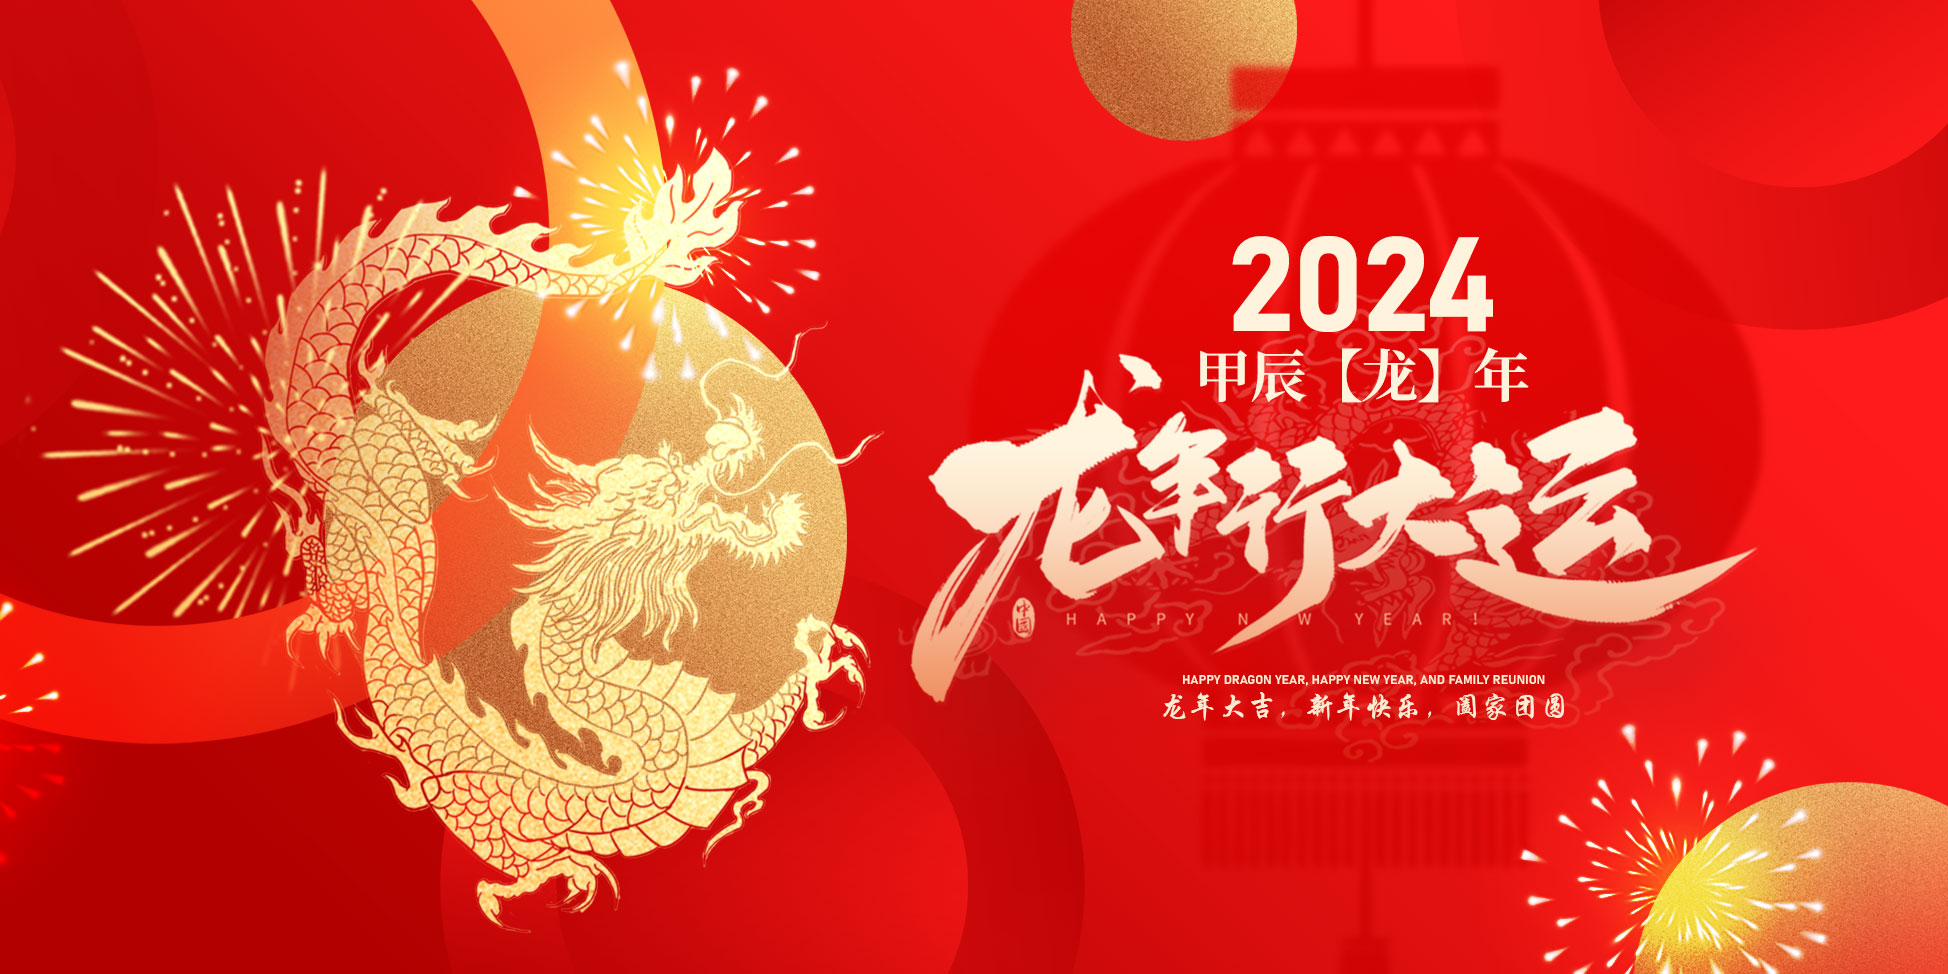  长江通信全体员工祝大家新年快乐！